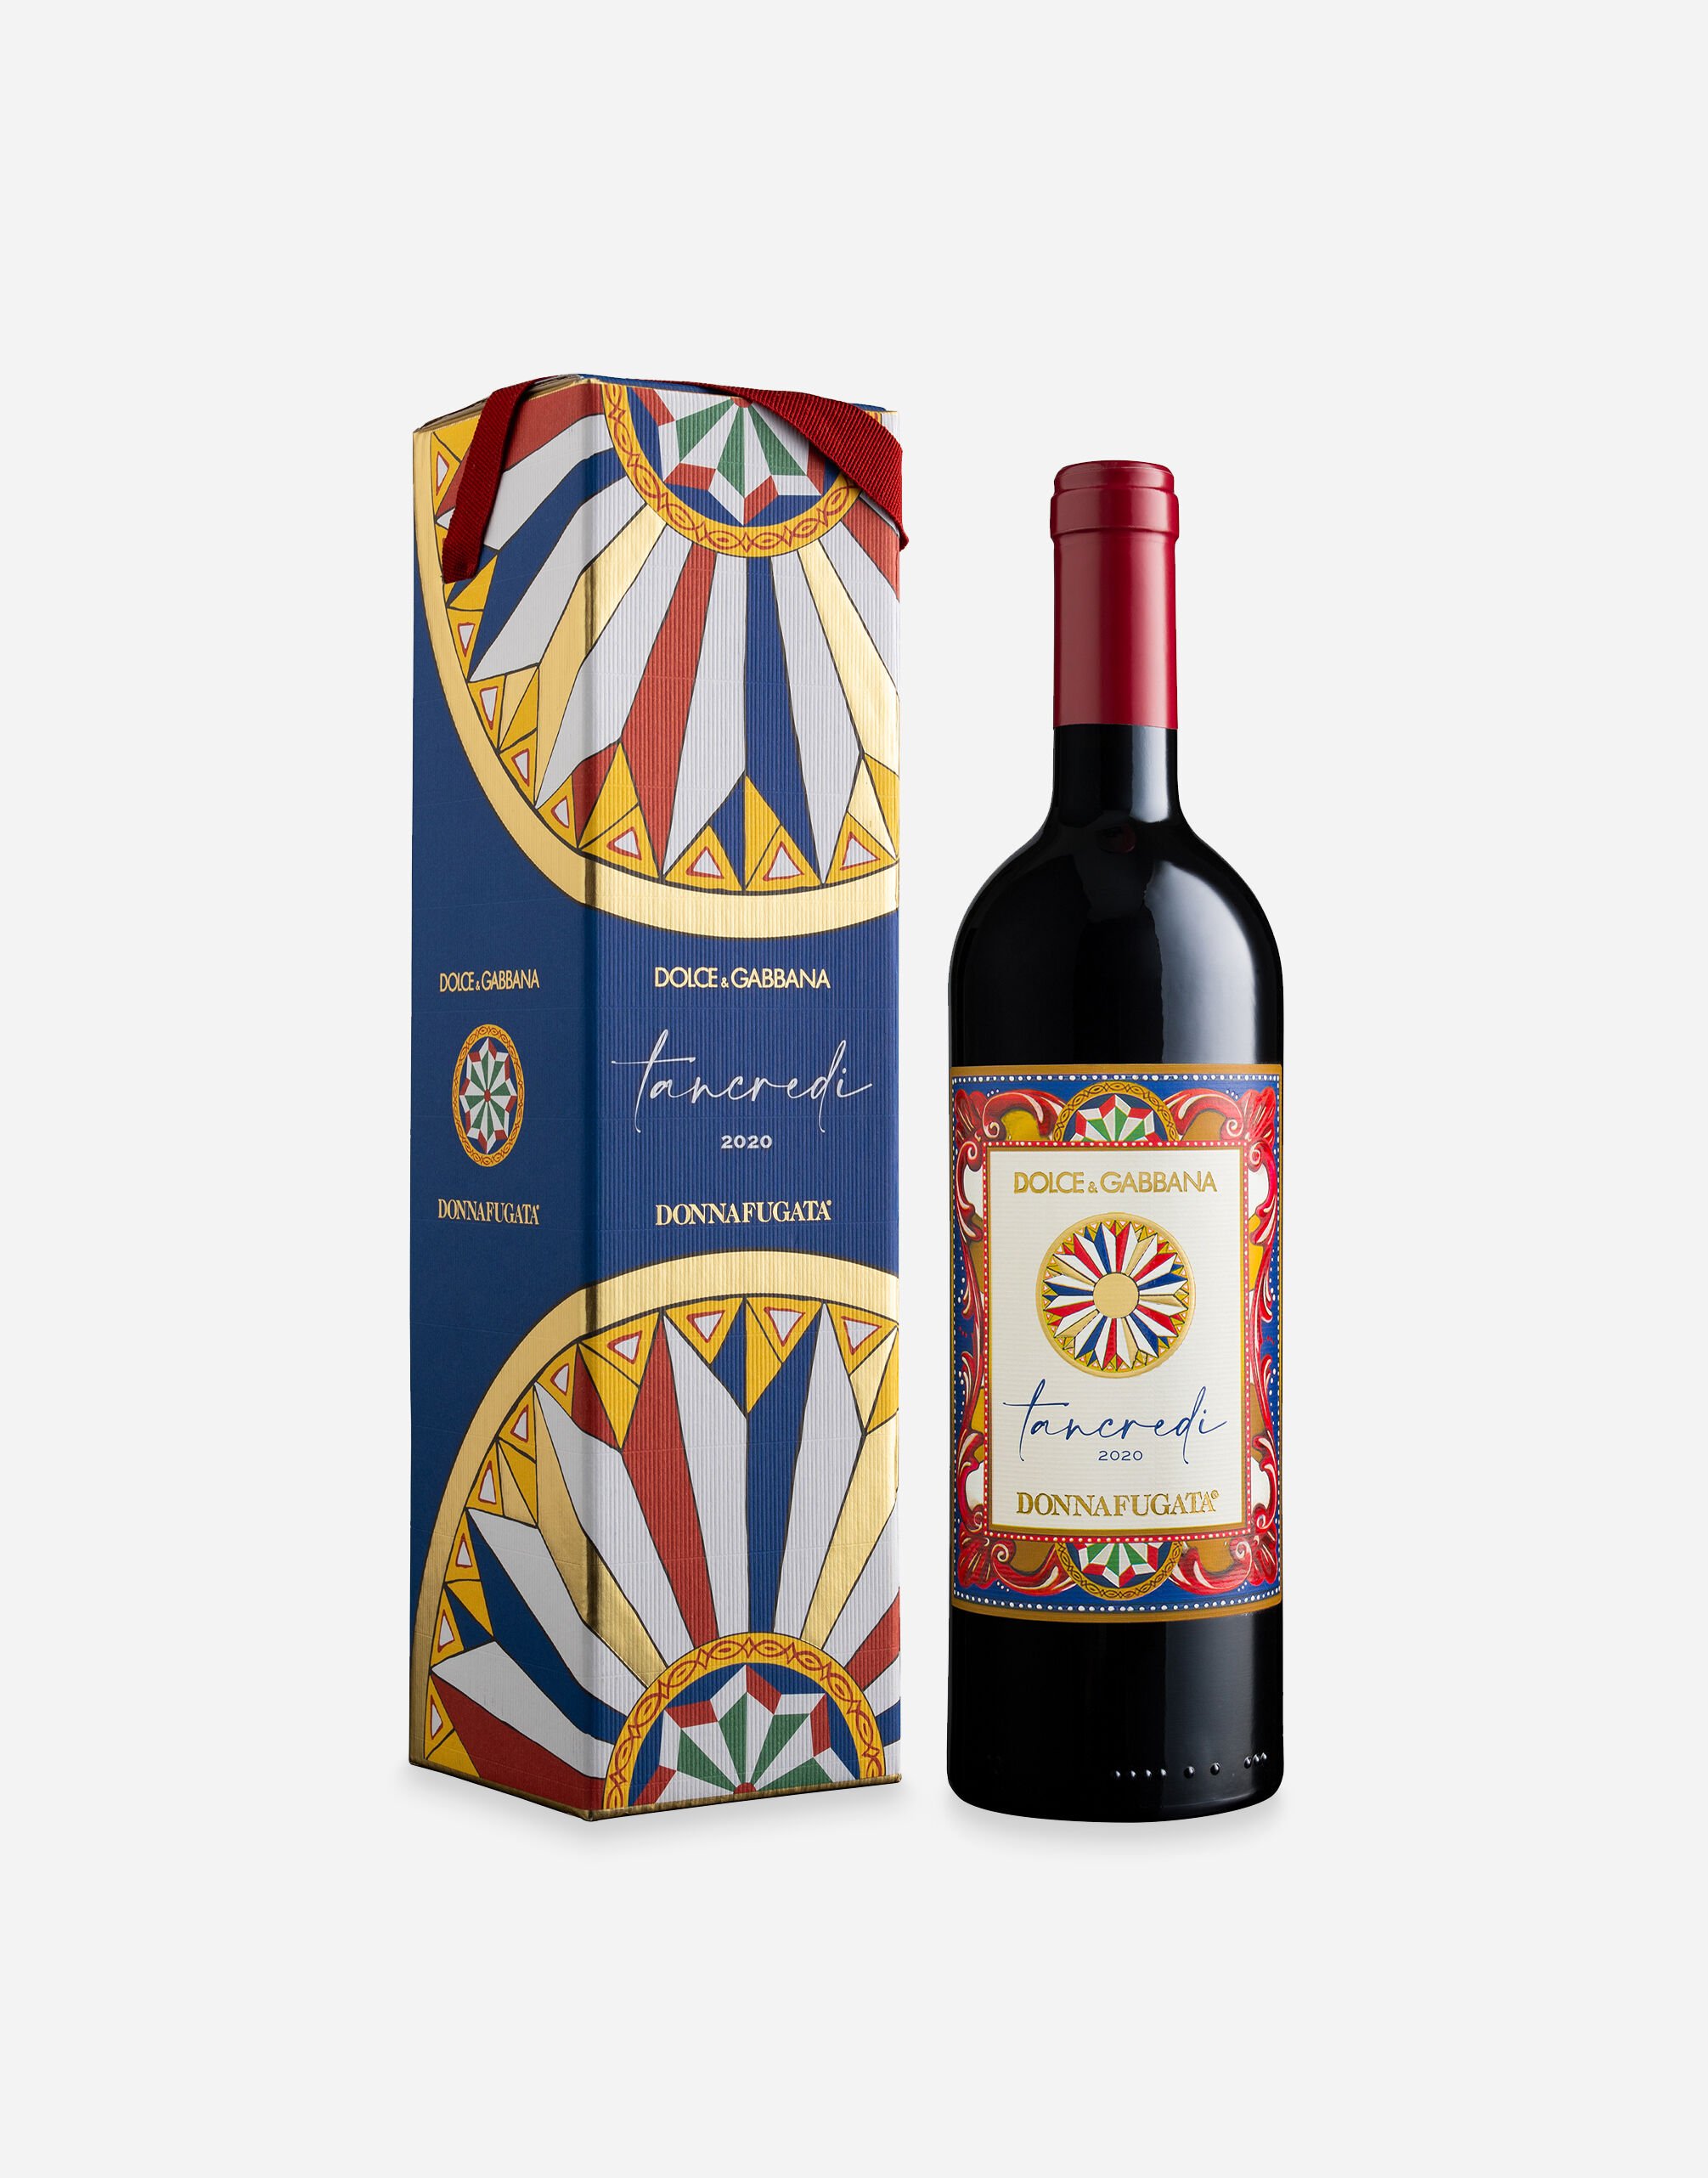 Dolce & Gabbana TANCREDI 2020 - Terre Siciliane IGT Rosso (0.75L) Single box Multicolor PW1003RES17